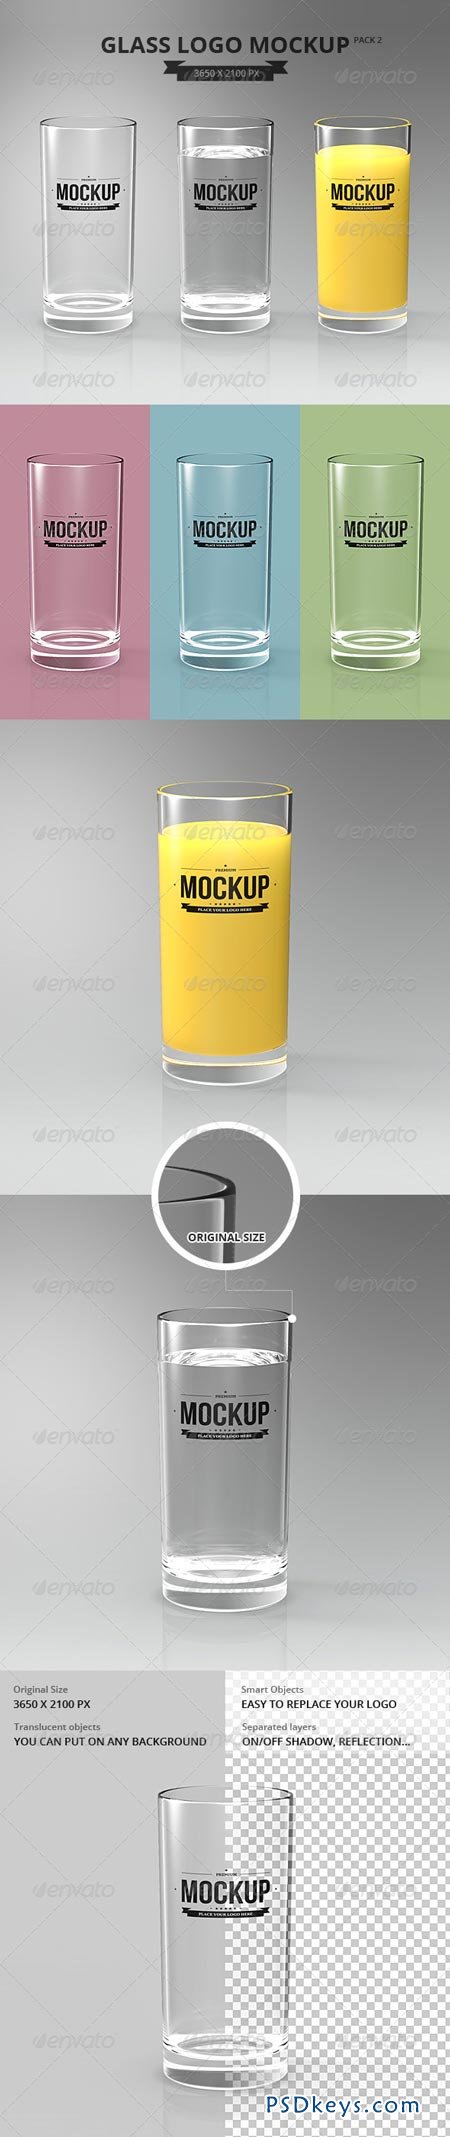 Glasses Logo Mockup Pack 2 7301861